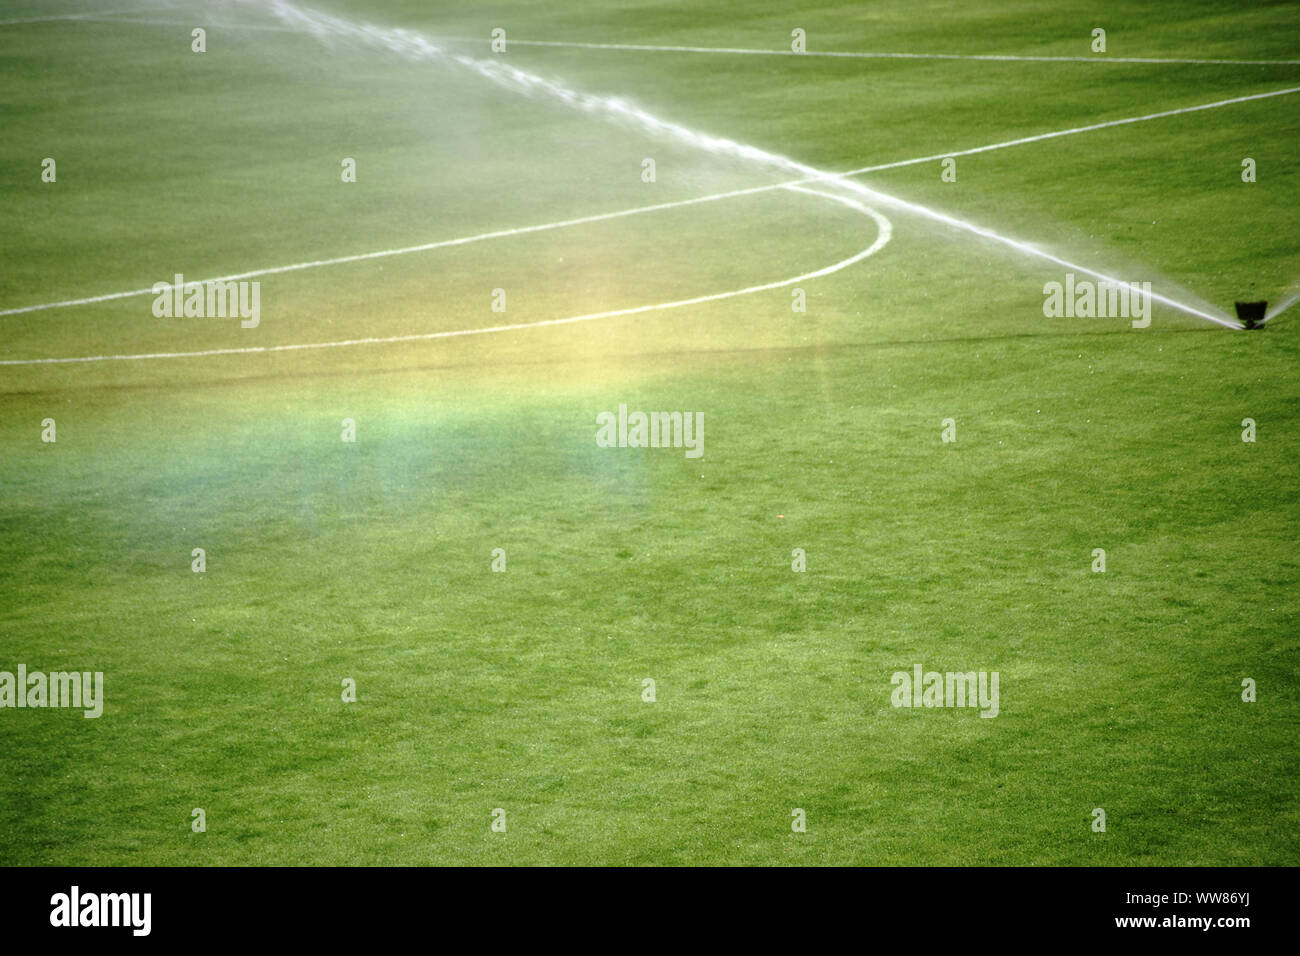 El verde césped de un campo de fútbol, con un sistema de riego haciendo un arco iris Foto de stock